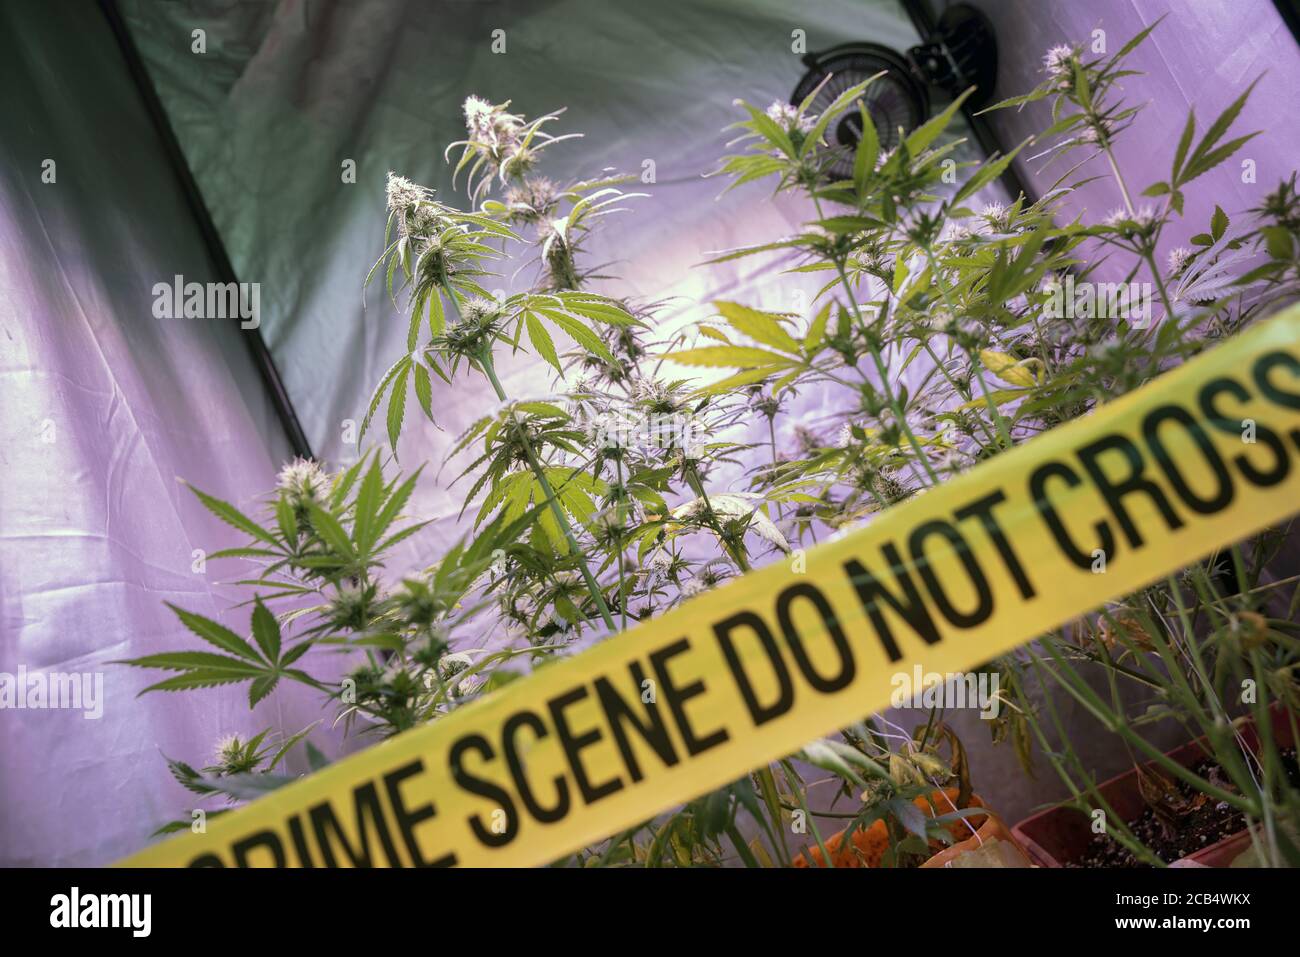 Plantation illégale de cannabis à l'intérieur d'une boîte de culture privée avec bande jaune de police scène de crime ne pas traverser. Concept de culture illégale de drogue de marijuana. Banque D'Images